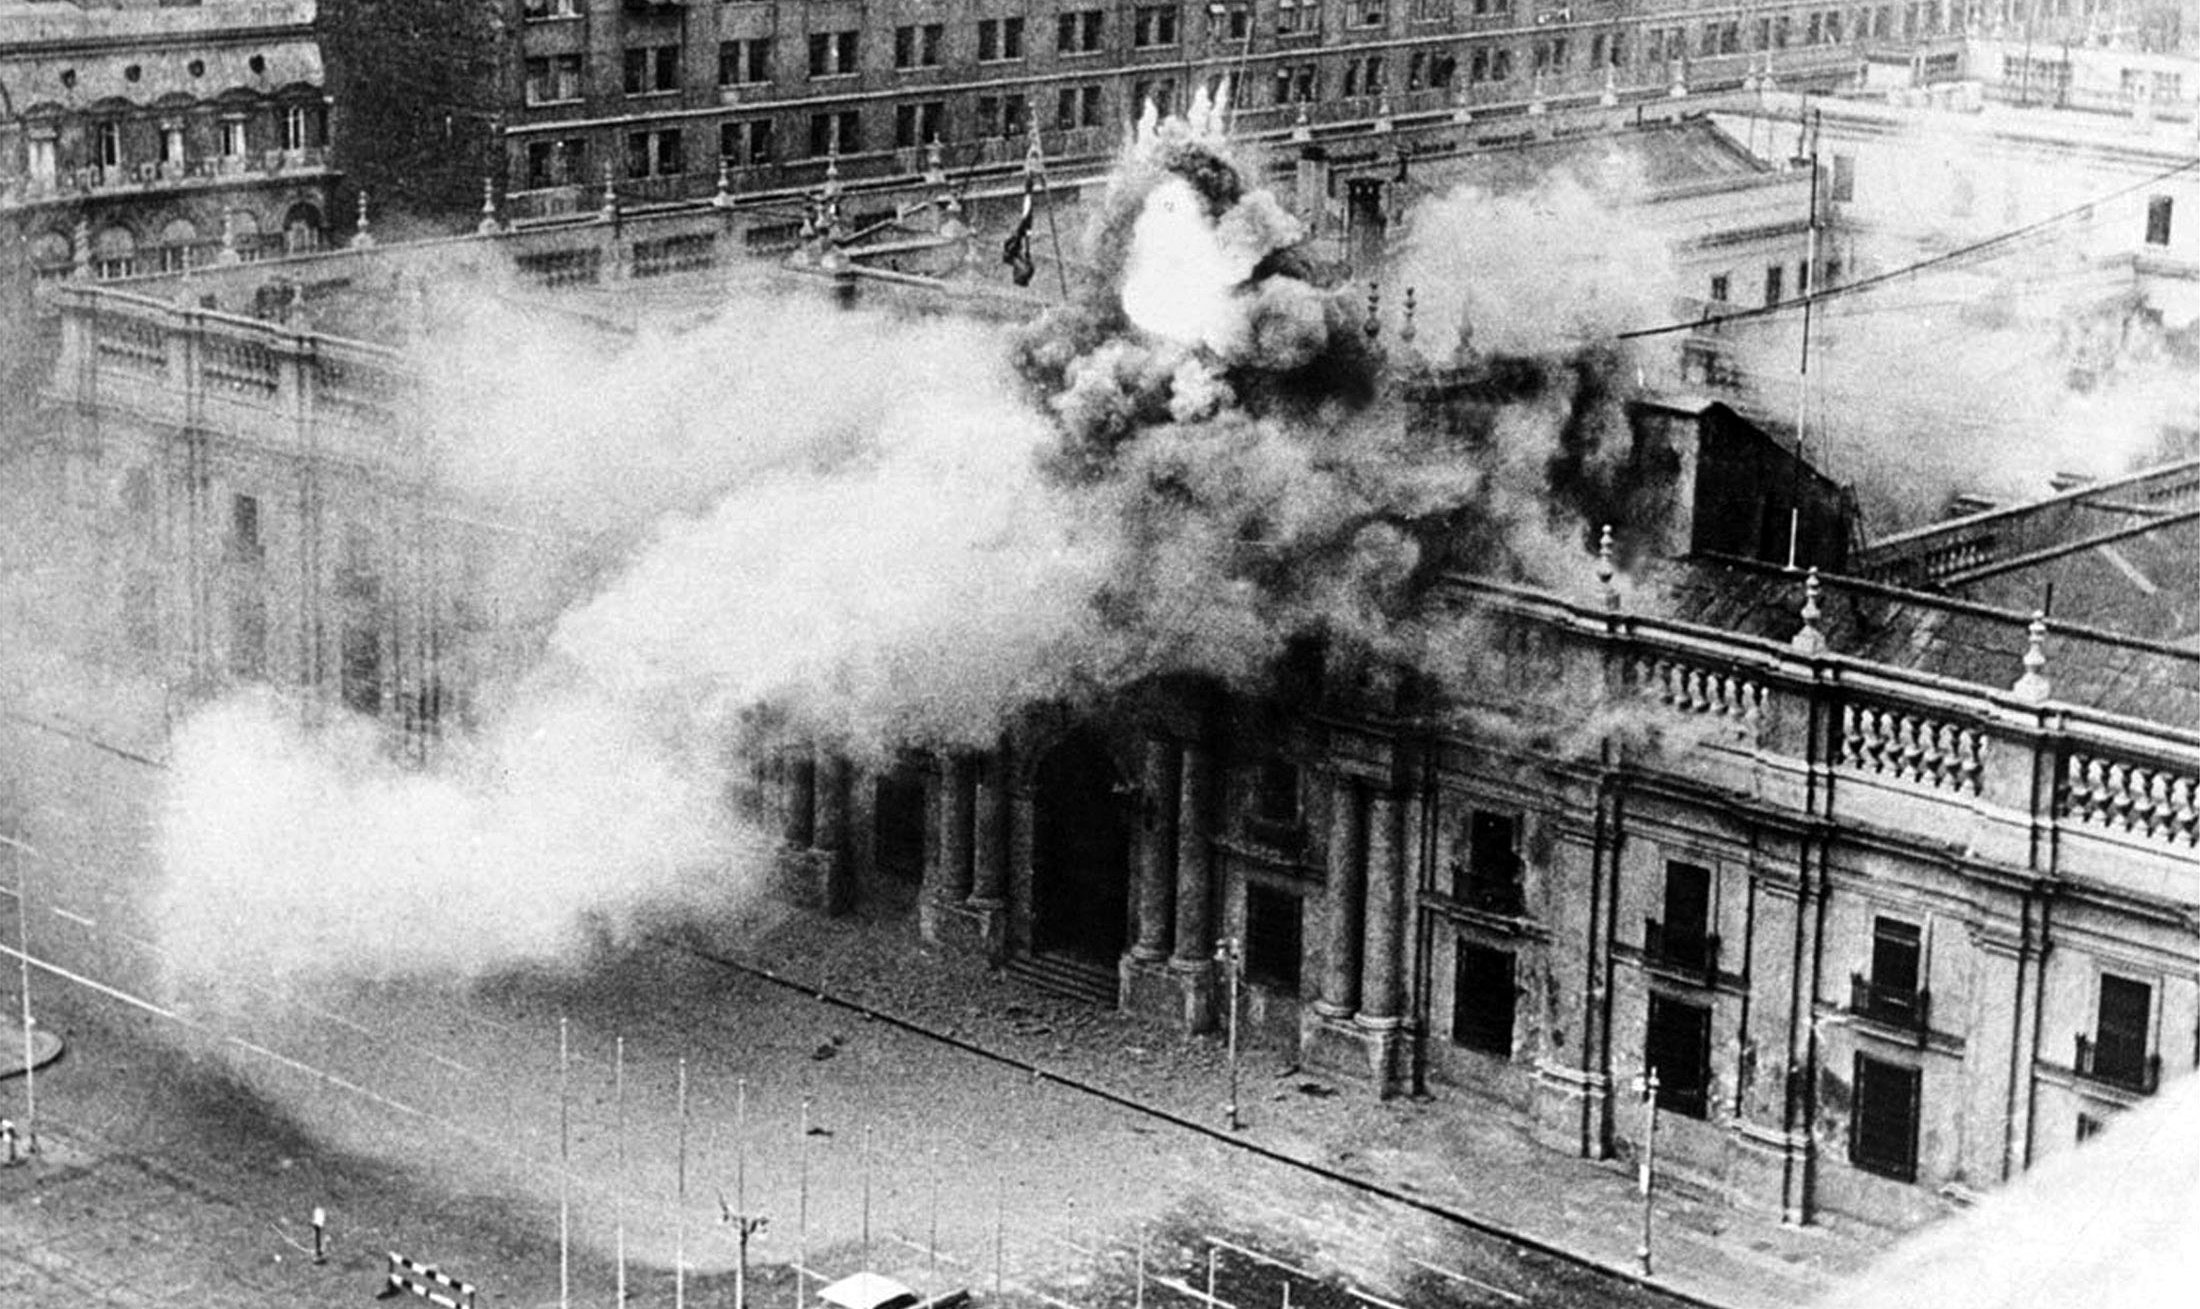 Durante o governo de Allende, Chile juntamente com Cuba, Peru e Panamá conformou uma frente de luta democrática e anti-imperialista